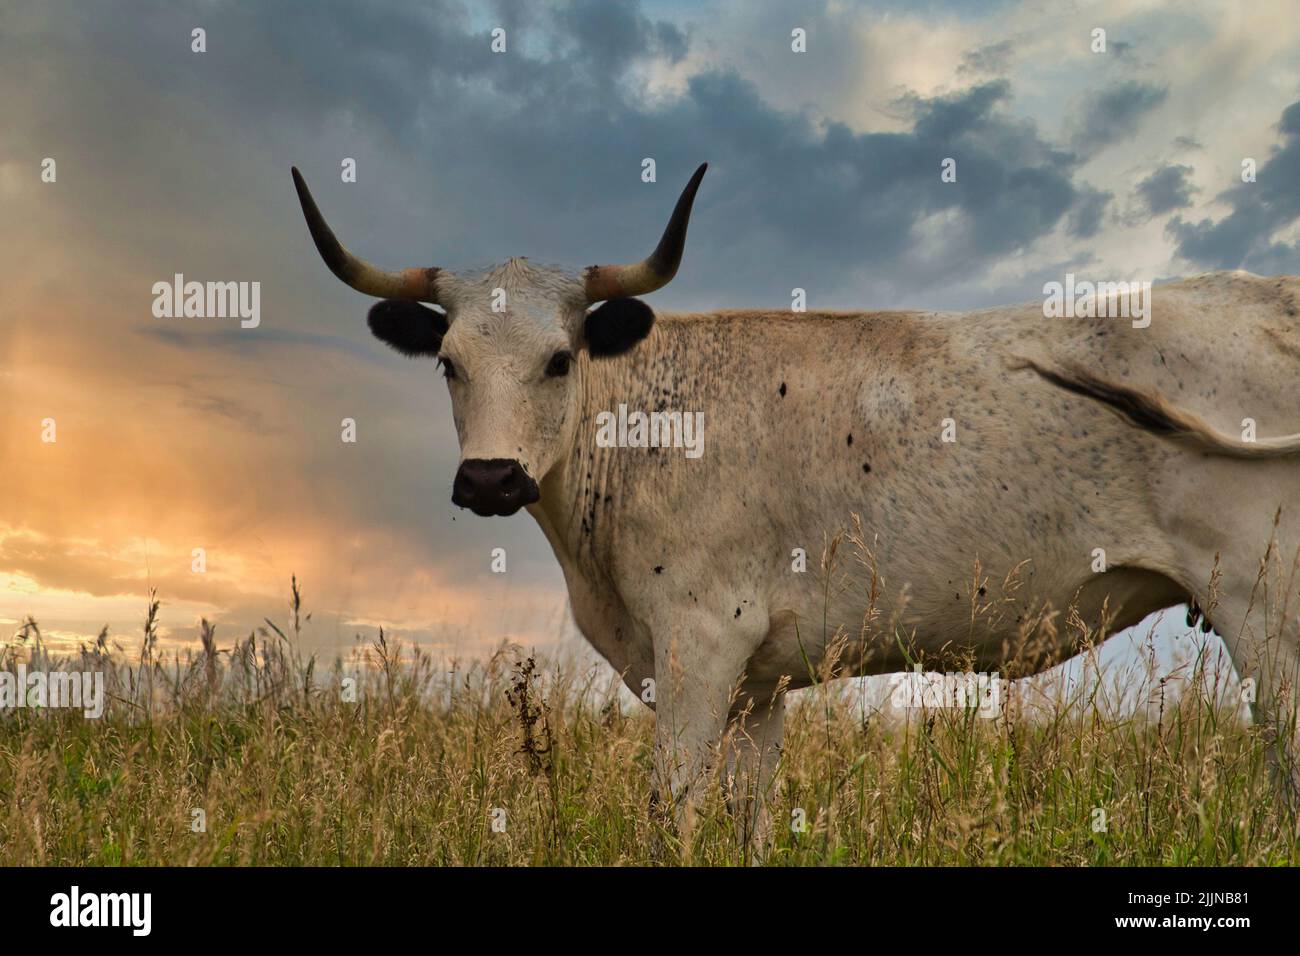 Eine Nahaufnahme eines Texas Longhorns, das auf Gras vor einem blau bewölkten Himmel steht Stockfoto